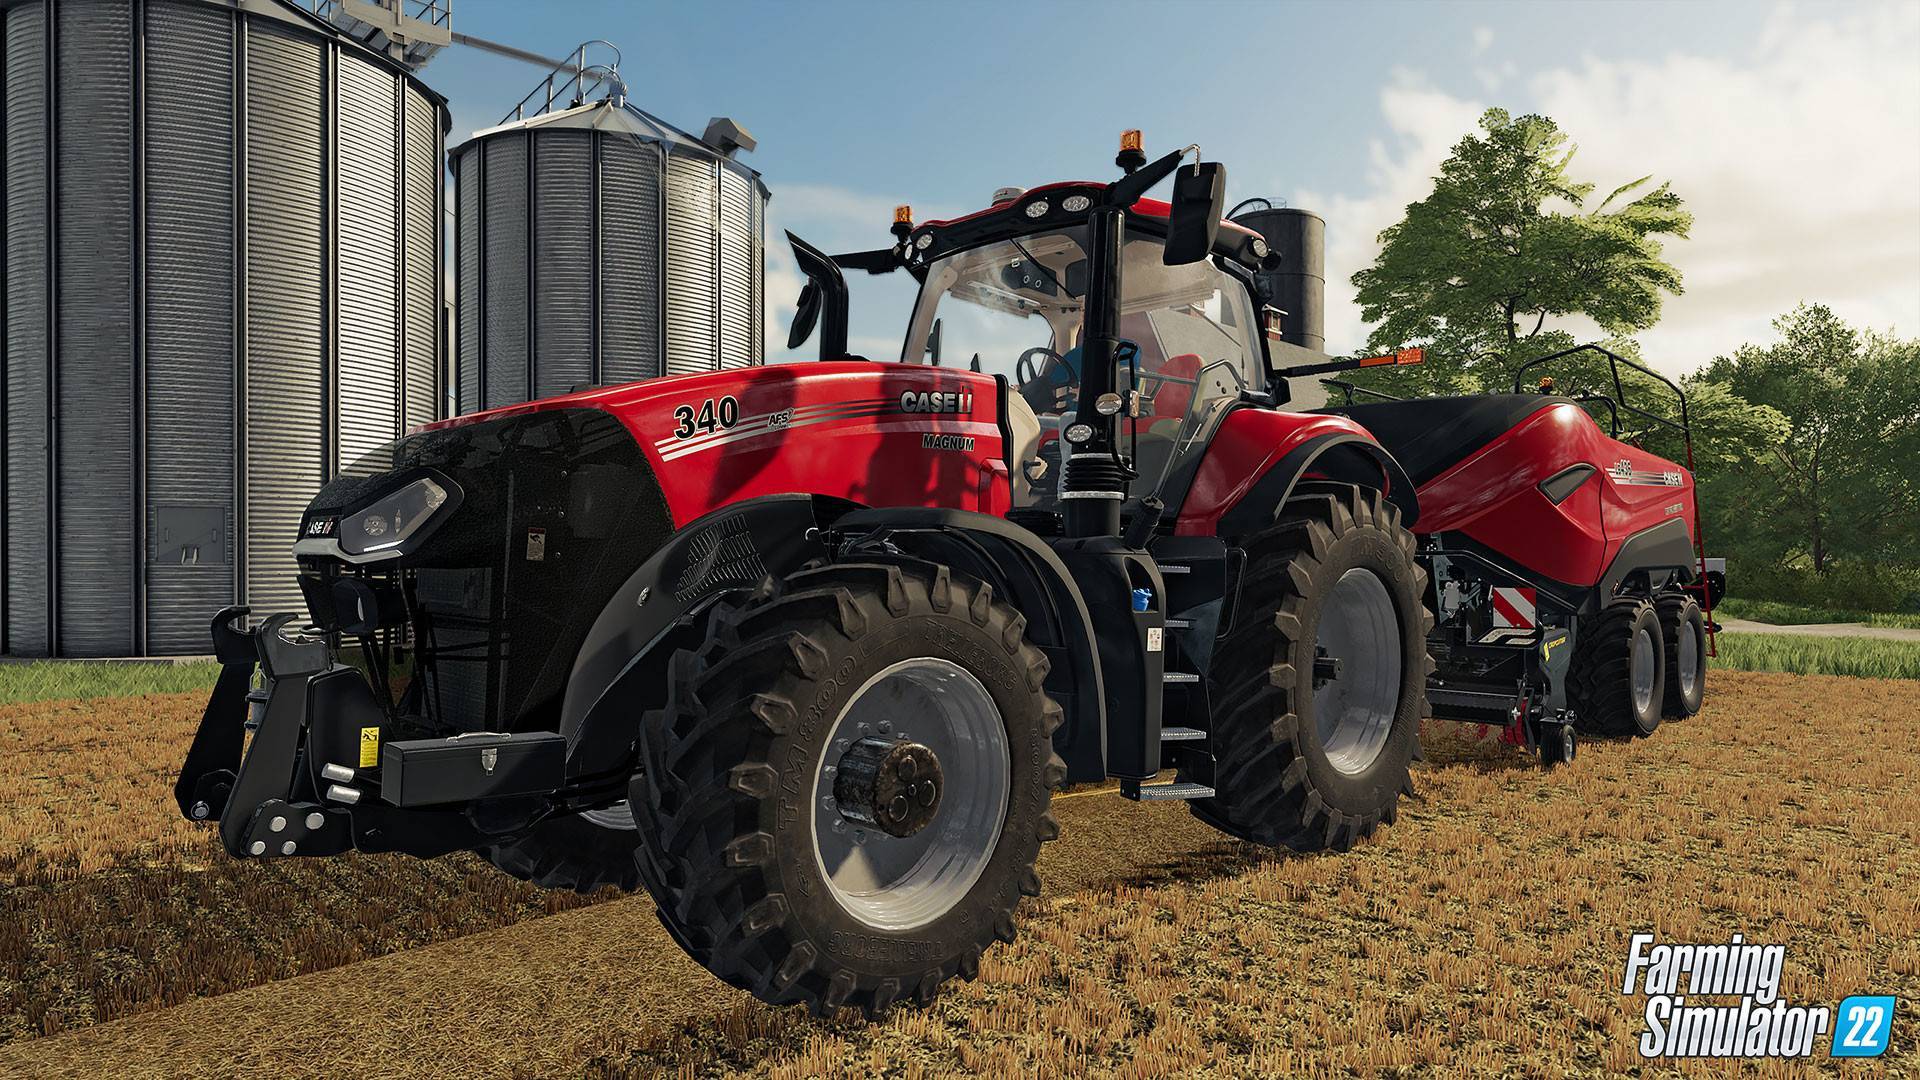 Farming Simulator 22 (PS4) precio más barato: 21,49€